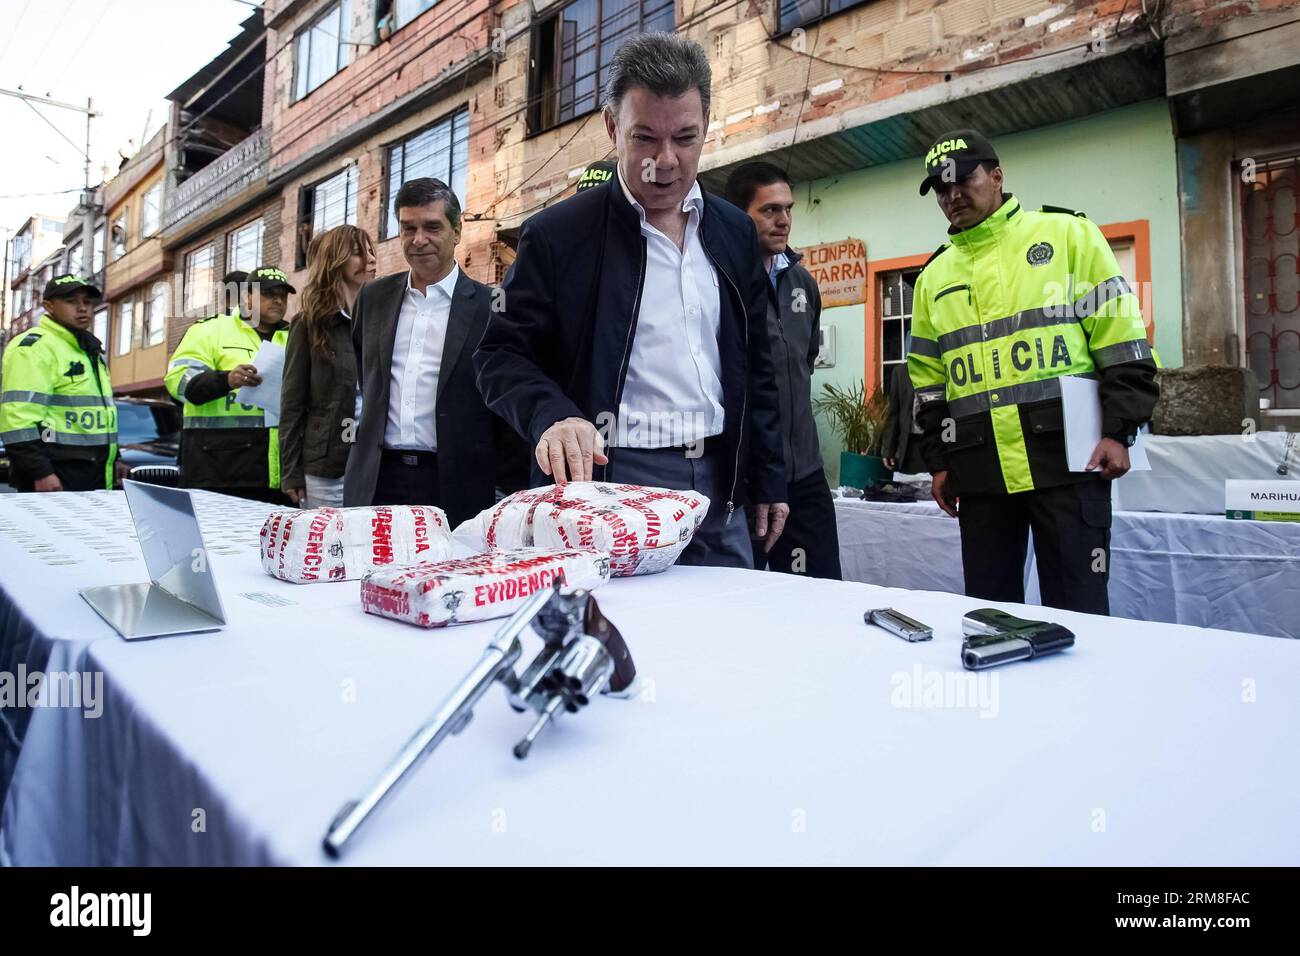 Le président colombien Juan Manuel Santos (C), observe une saisie de cocaïne lors d’une opération contre les pots appelés à Bogota, capitale de la Colombie, le 11 avril 2014. Santos a lancé jeudi un nouveau plan pour lutter contre le microtrafic afin de démolir les structures de ceux qui exploitent les pots de drogues illicites et d’armes, selon la presse locale. (Xinhua/Jhon Paz) (jp) (fnc) COLOMBIA-BOGOTA-SECURITY-SANTOS PUBLICATIONxNOTxINxCHN Président colombien Juan Manuel Santos C observe une saisie de cocaïne lors de l'opération contre le pot appelé à Bogota capitale de la Colombie LE 11 2014 avril Santo Banque D'Images